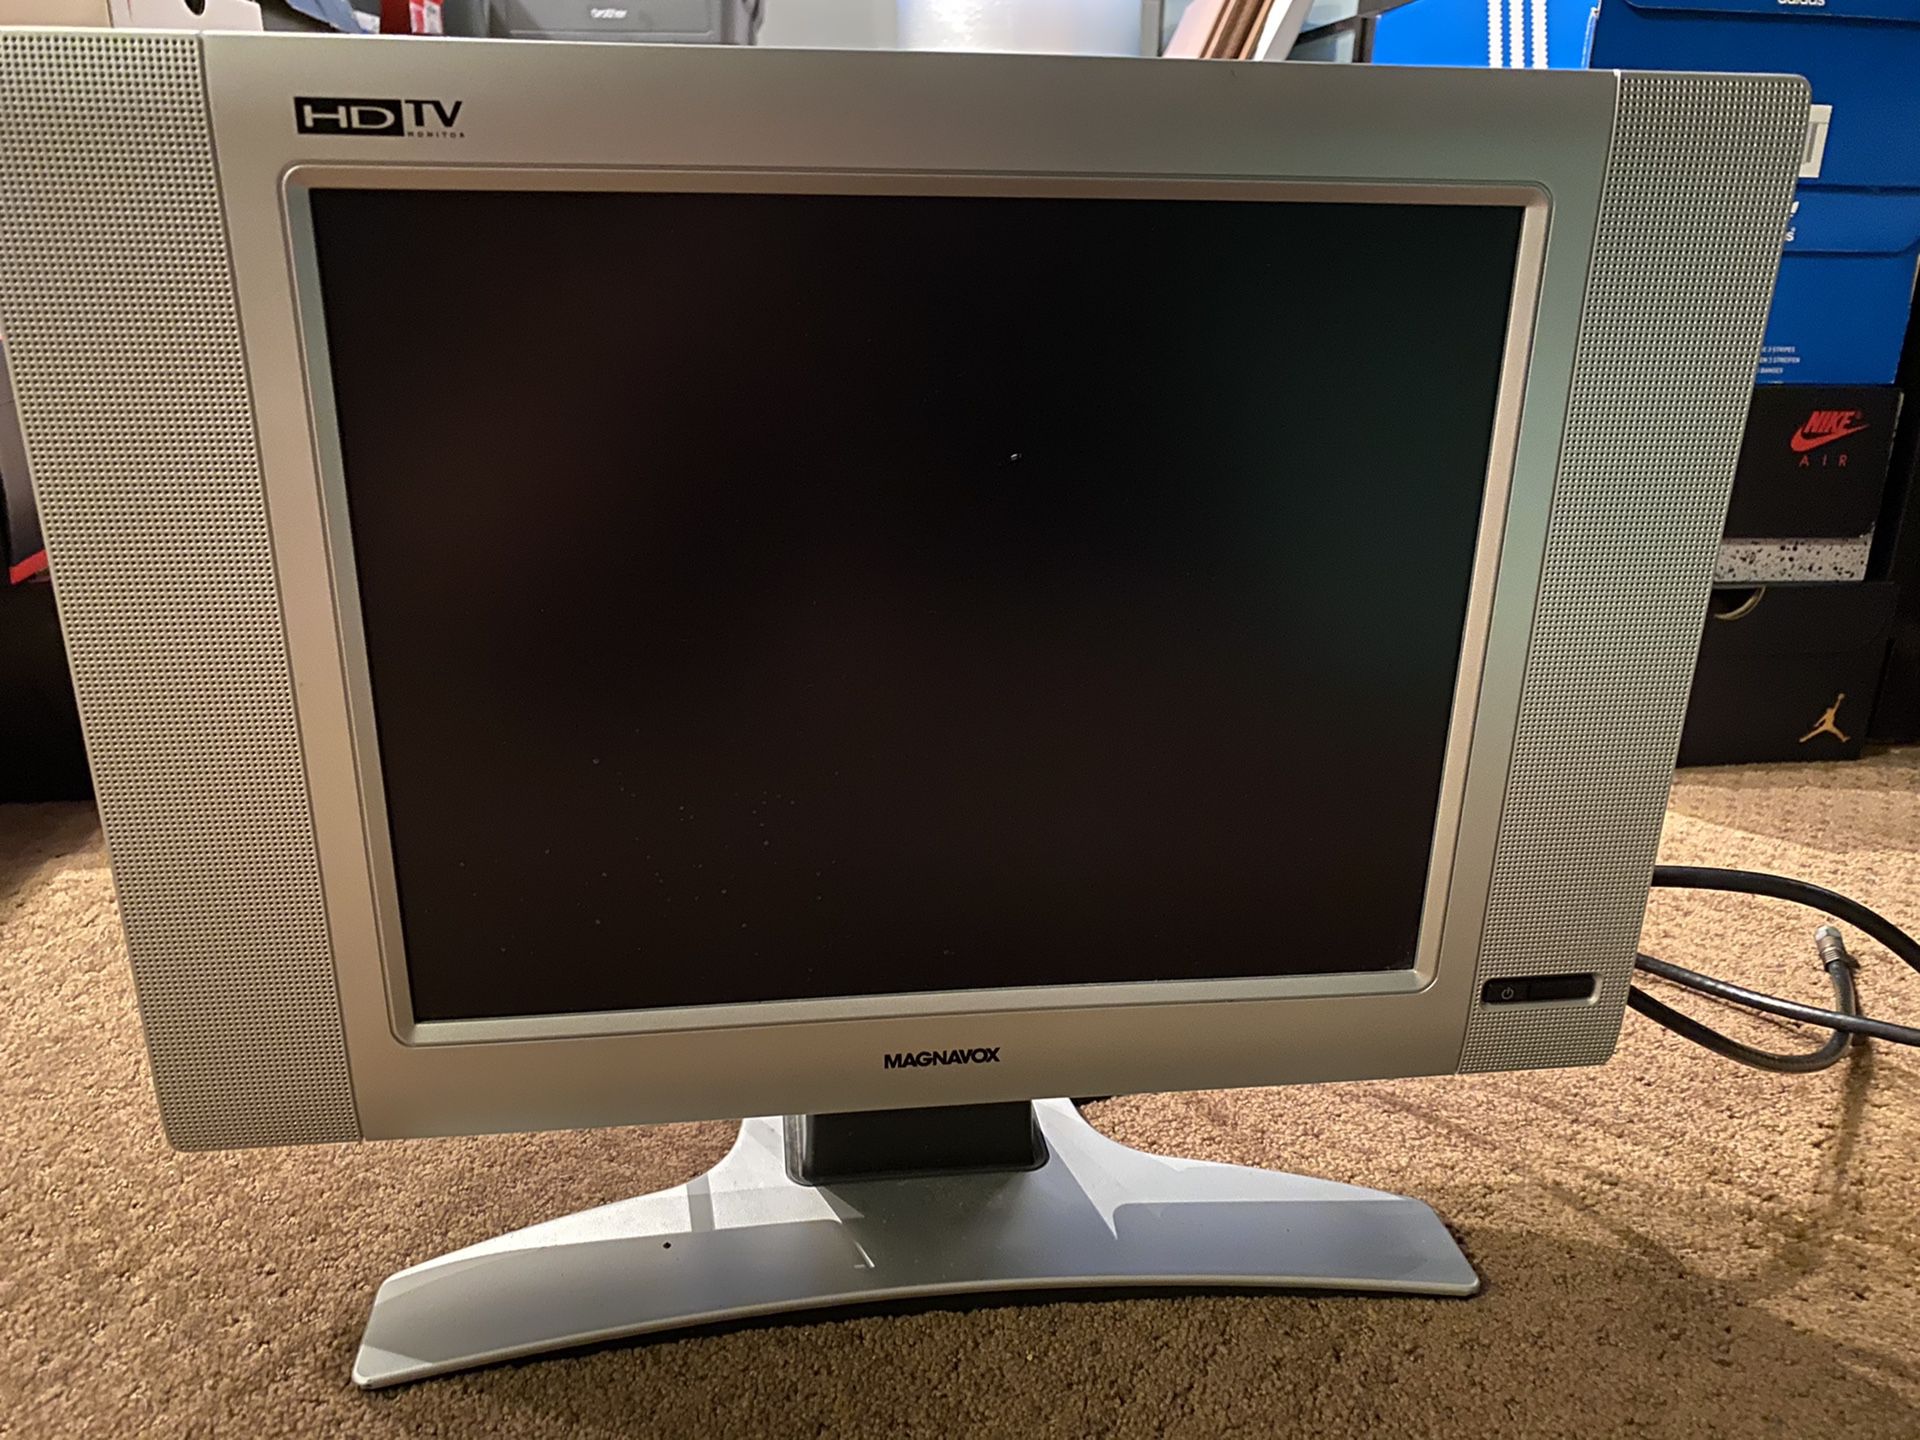 17” Magnavox Flat Screen Plasma TV w/ Stand like new!